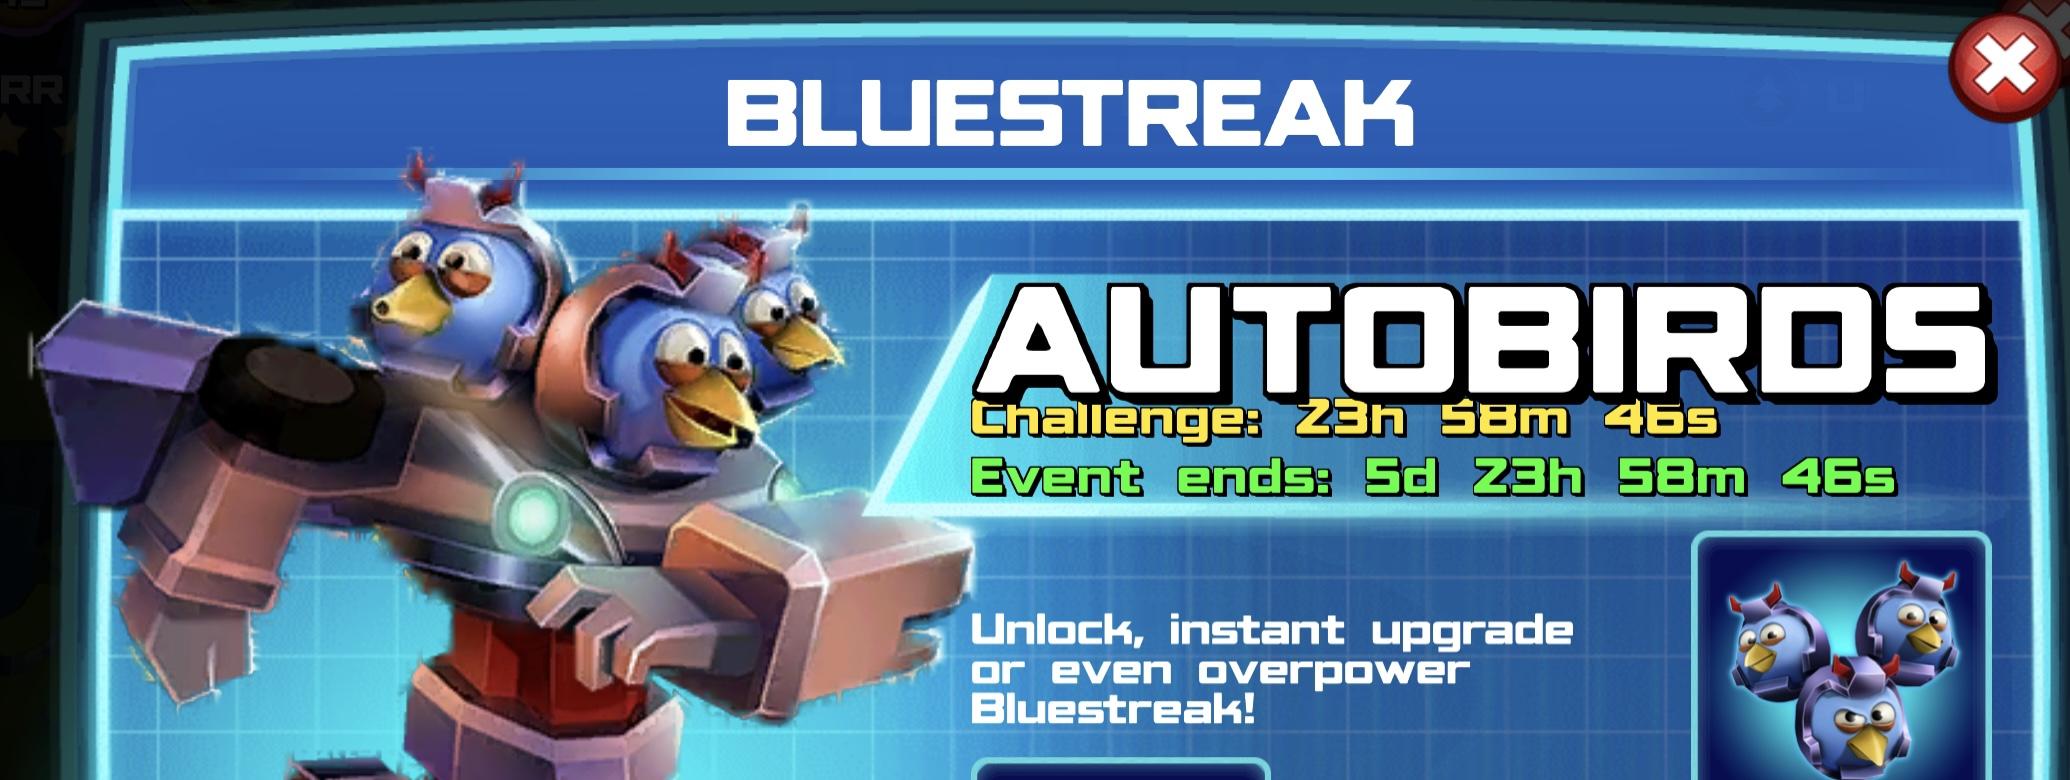 The event banner for Bluestreak